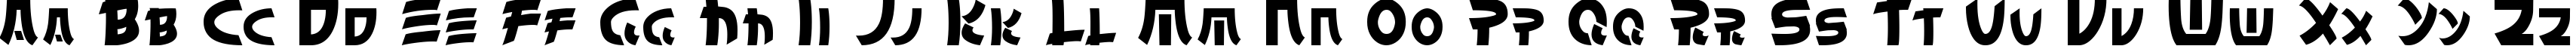 Пример написания английского алфавита шрифтом Chinyen Normal